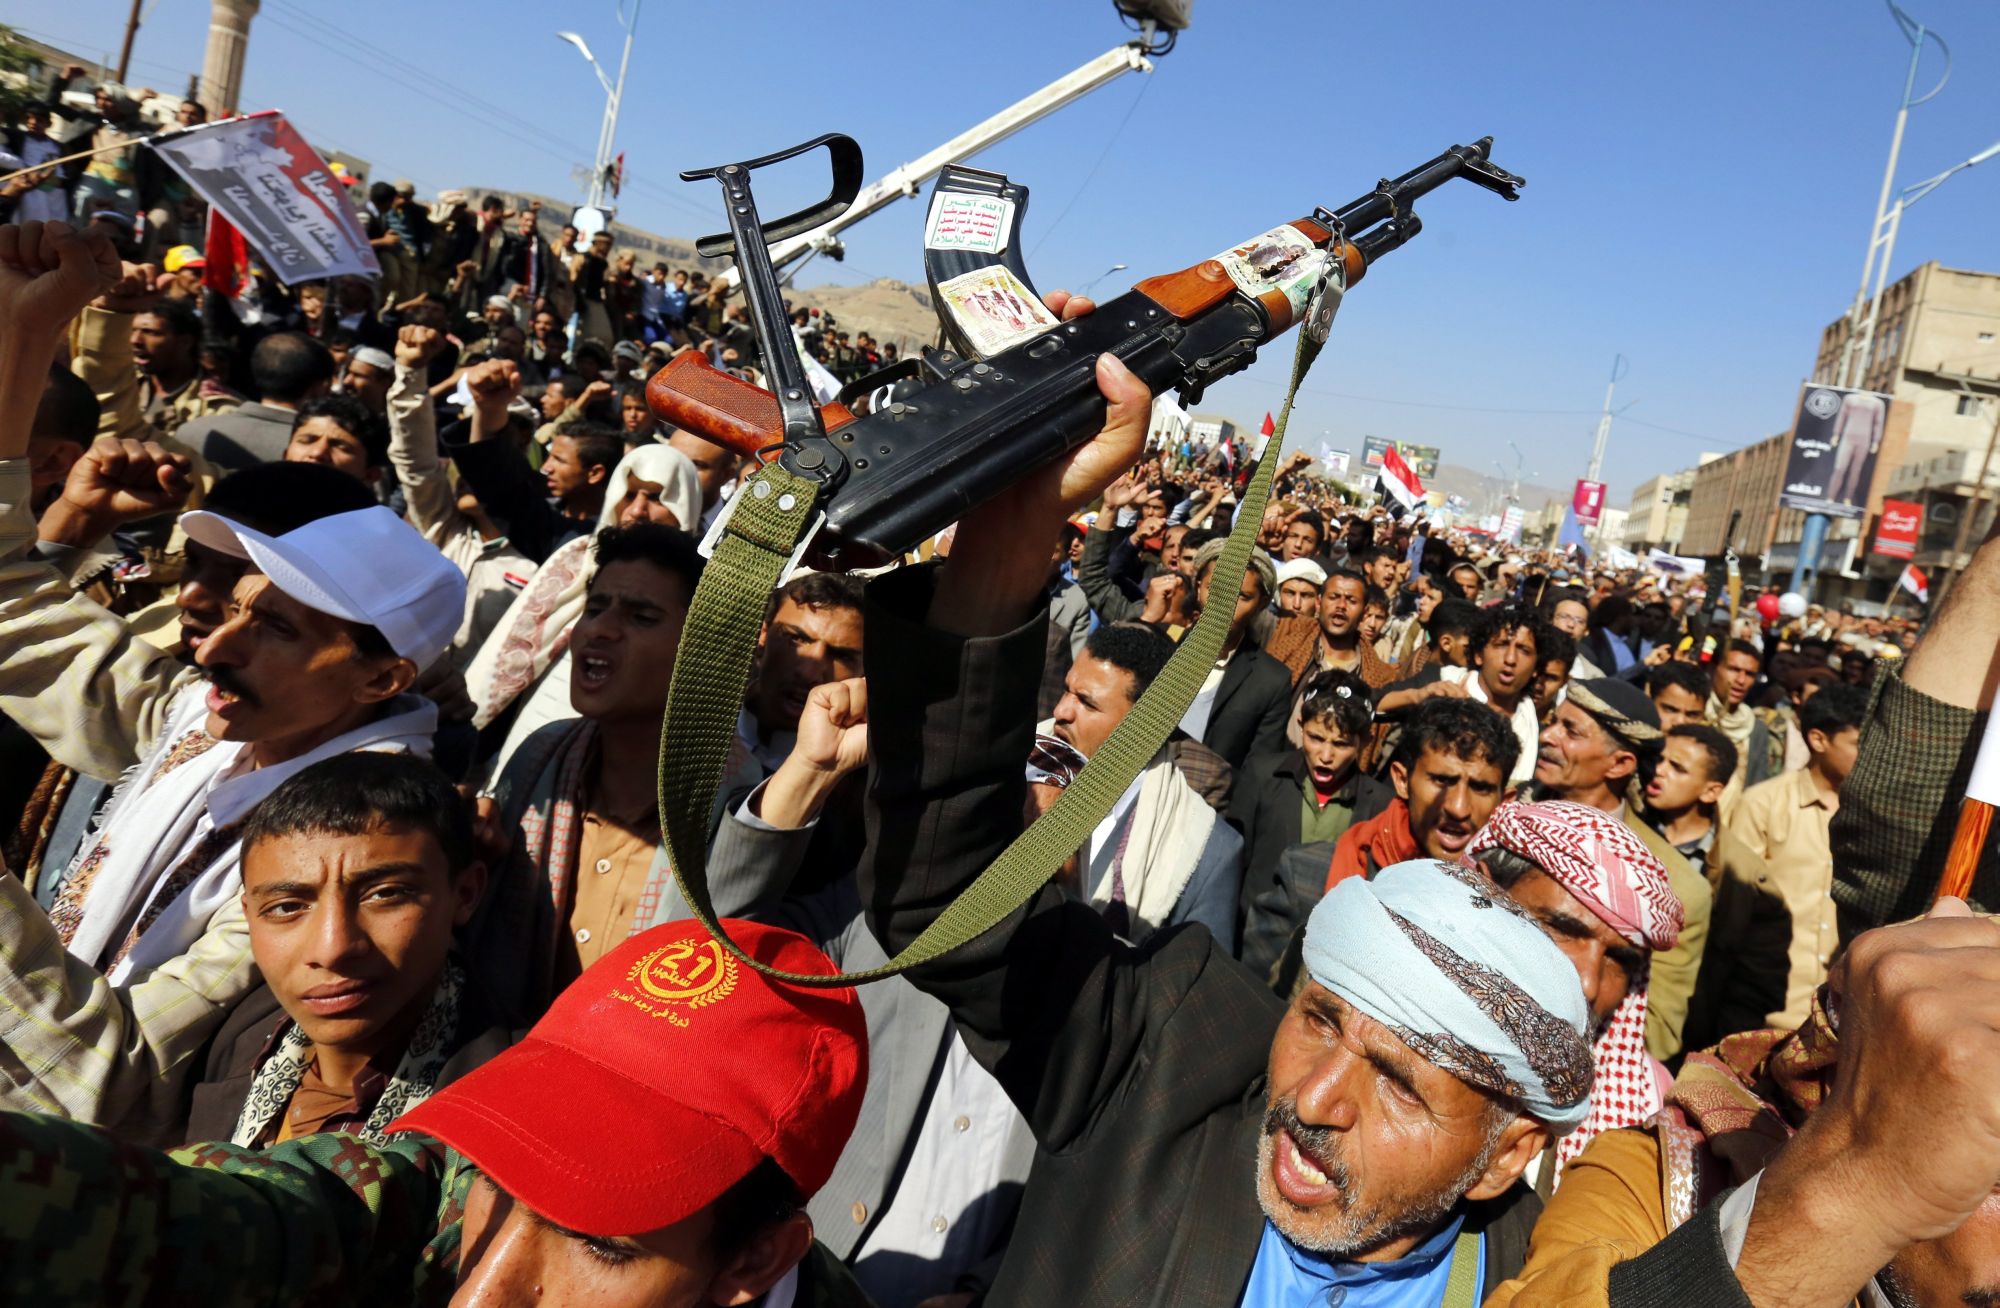 Szanaa, 2017. november 13. Jemeniek tüntetnek a szaúdi koalíció blokádja ellen Szanaában 2017. november 13-án. A blokád miatt a nemzetközi segélyszállítmányok nem jutnak be az országba, ezért súlyos élelmiszer- és gyógyszerhiány fenyegeti a lakosságot. A síita lázadók ellen a jemeni kormány oldalán harcoló szaúdi koalíció november 6-án zárta le a jemeni repülõtereket és kikötőket a Rijád elleni, két nappal korábban elkövetett rakétatámadás miatt. (MTI/EPA/Jahja Arhab)